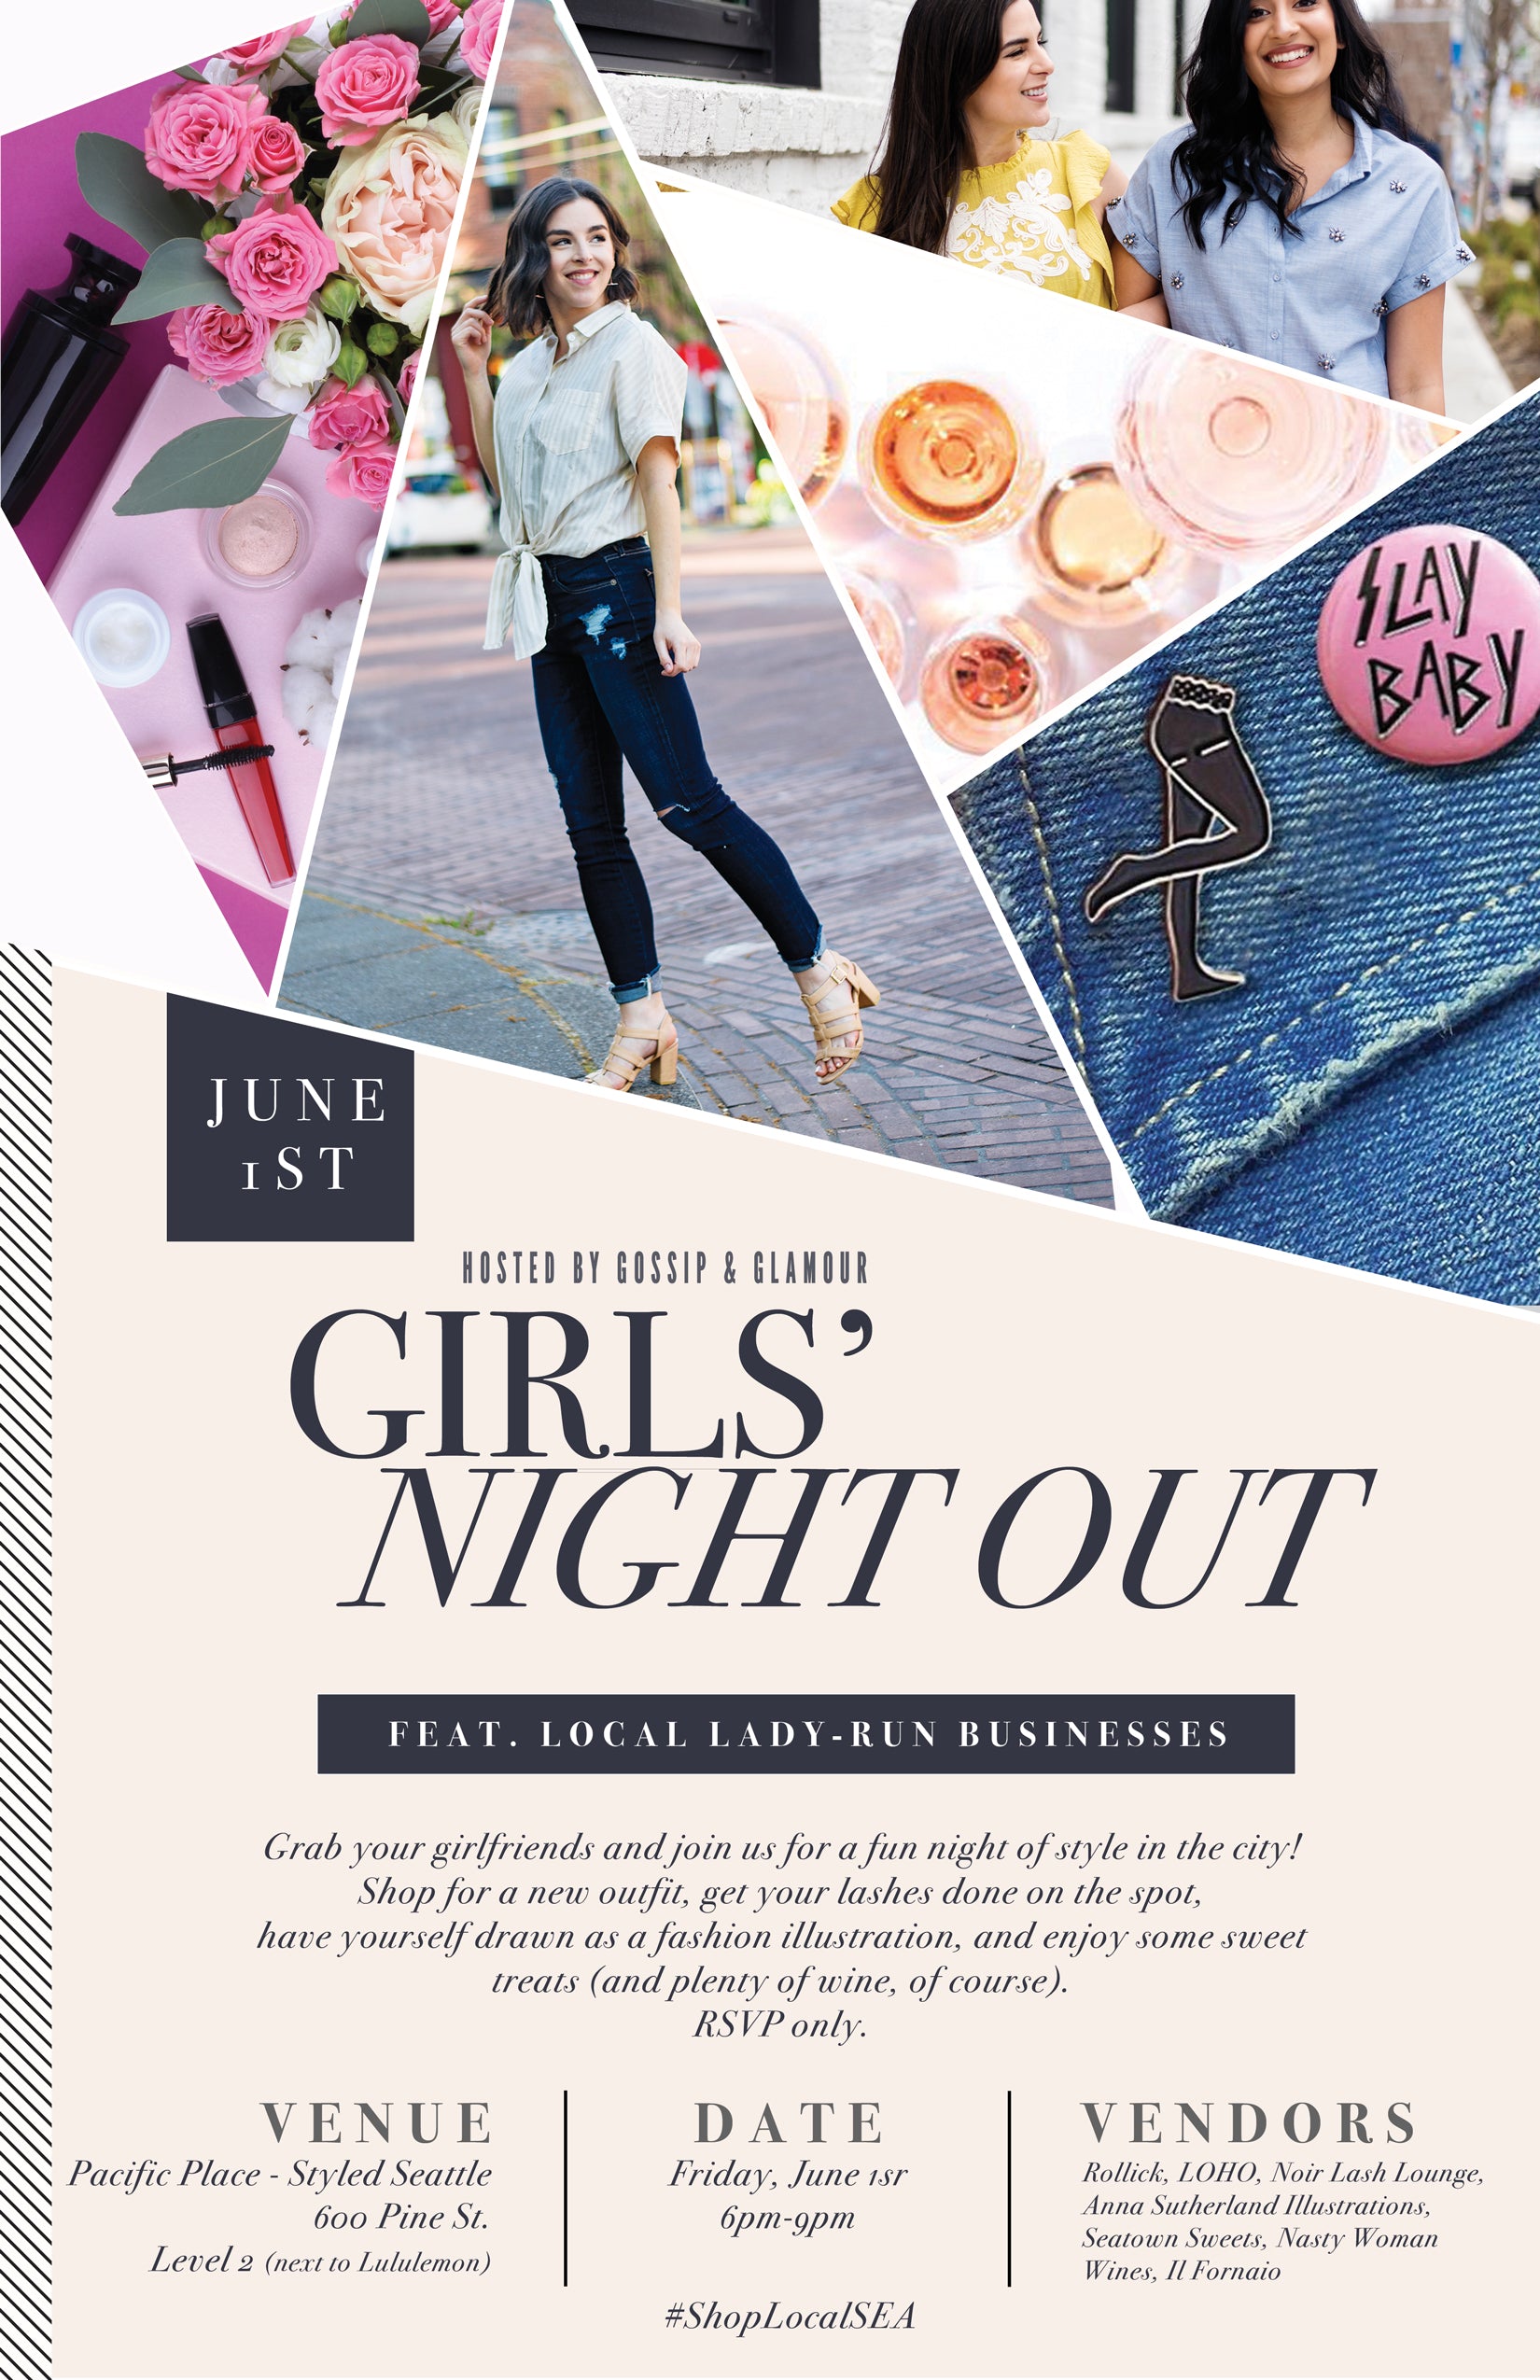 Event Calendar - Seattle Girls' Night Out - June 1st